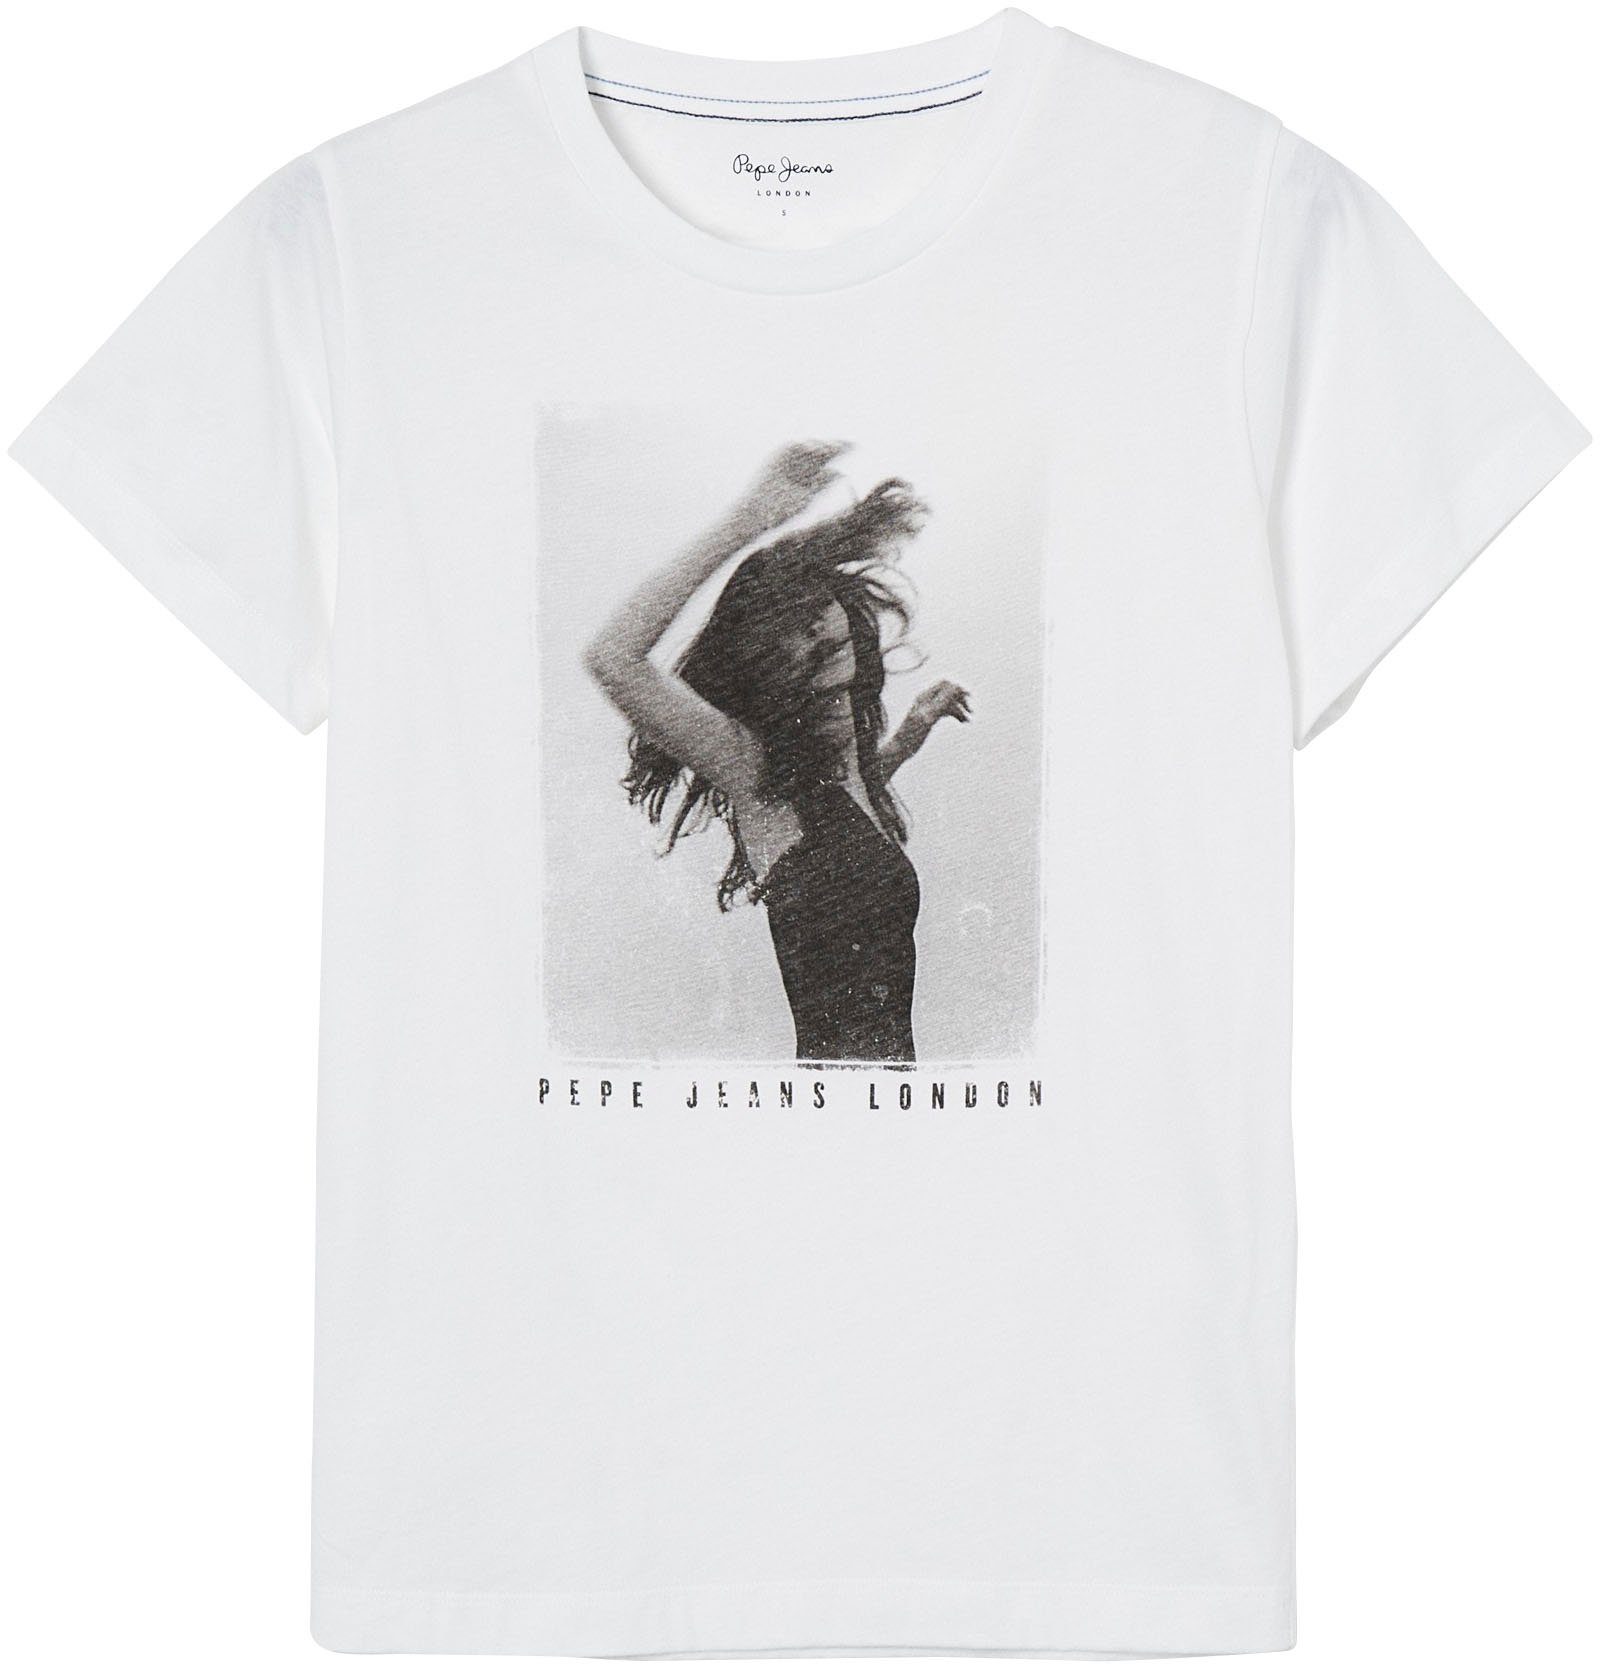 markentypischem Frontprint in SONYA figurbetonter Jeans 800WHITE T-Shirt tollem Pepe mit und Passform